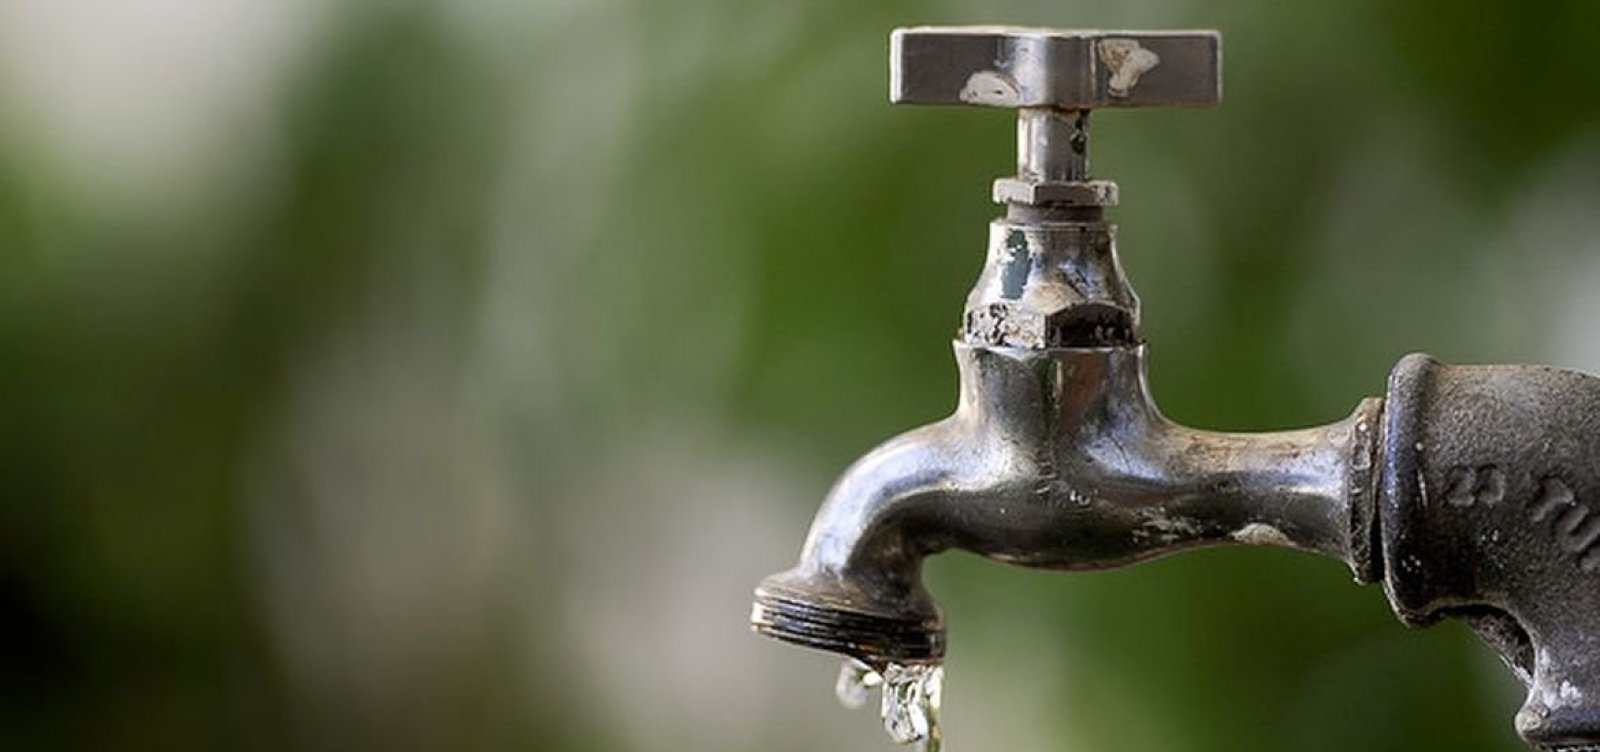 Abastecimento de água será interrompido em 25 bairros de Salvador na segunda-feira